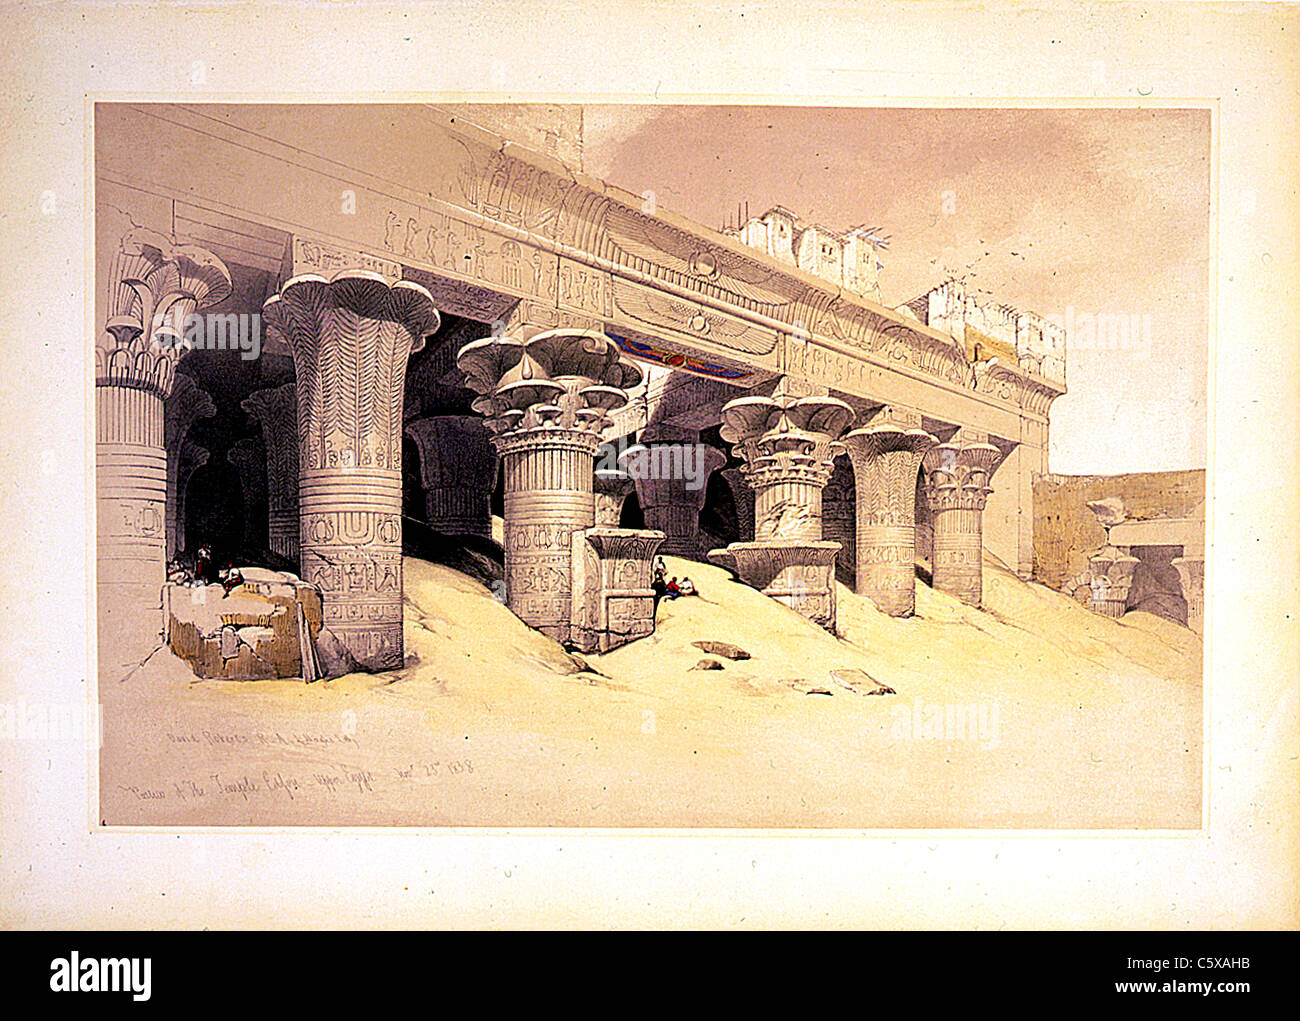 Portique du Temple d'Edfou haute Egypte Novr 23e 1838, gravure Louis Haghe, David Roberts peinture - Terre Sainte Syrie Idumea Arabie Egypte et Nubia Banque D'Images